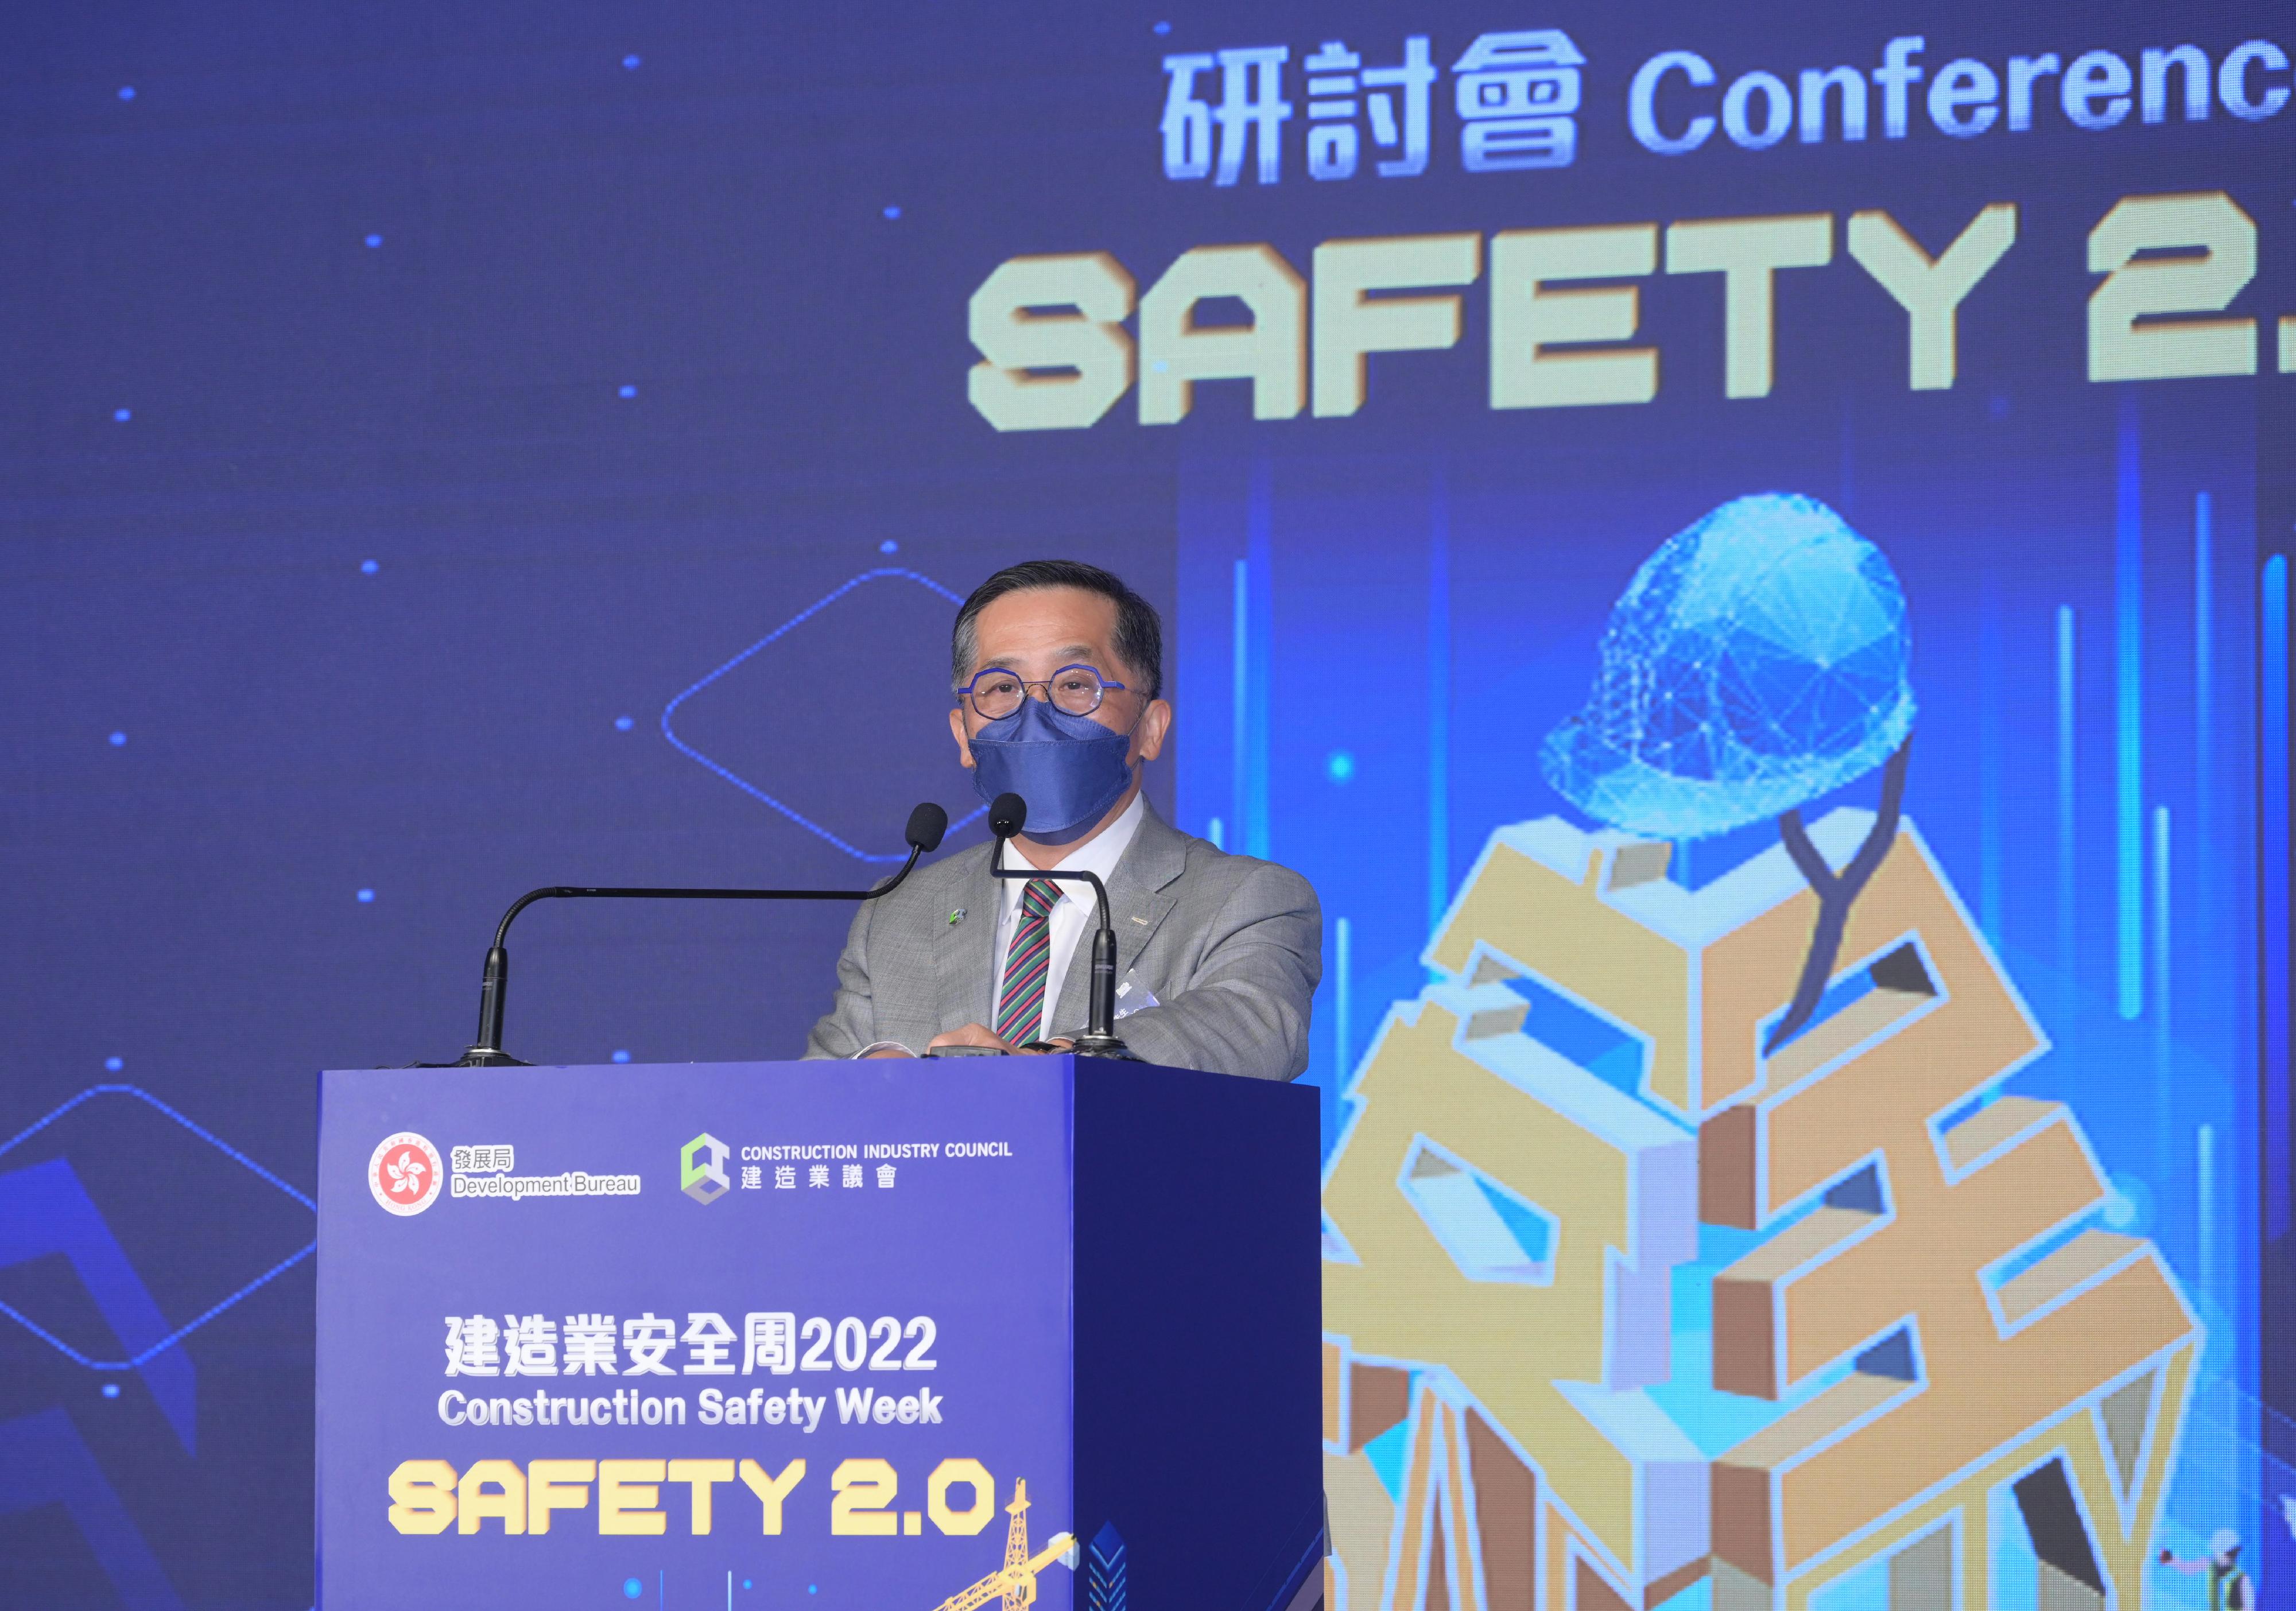 「建造业安全周2022」今日（八月二十九日）至九月二日举行。图示建造业议会主席何安诚在开幕典礼致辞。

